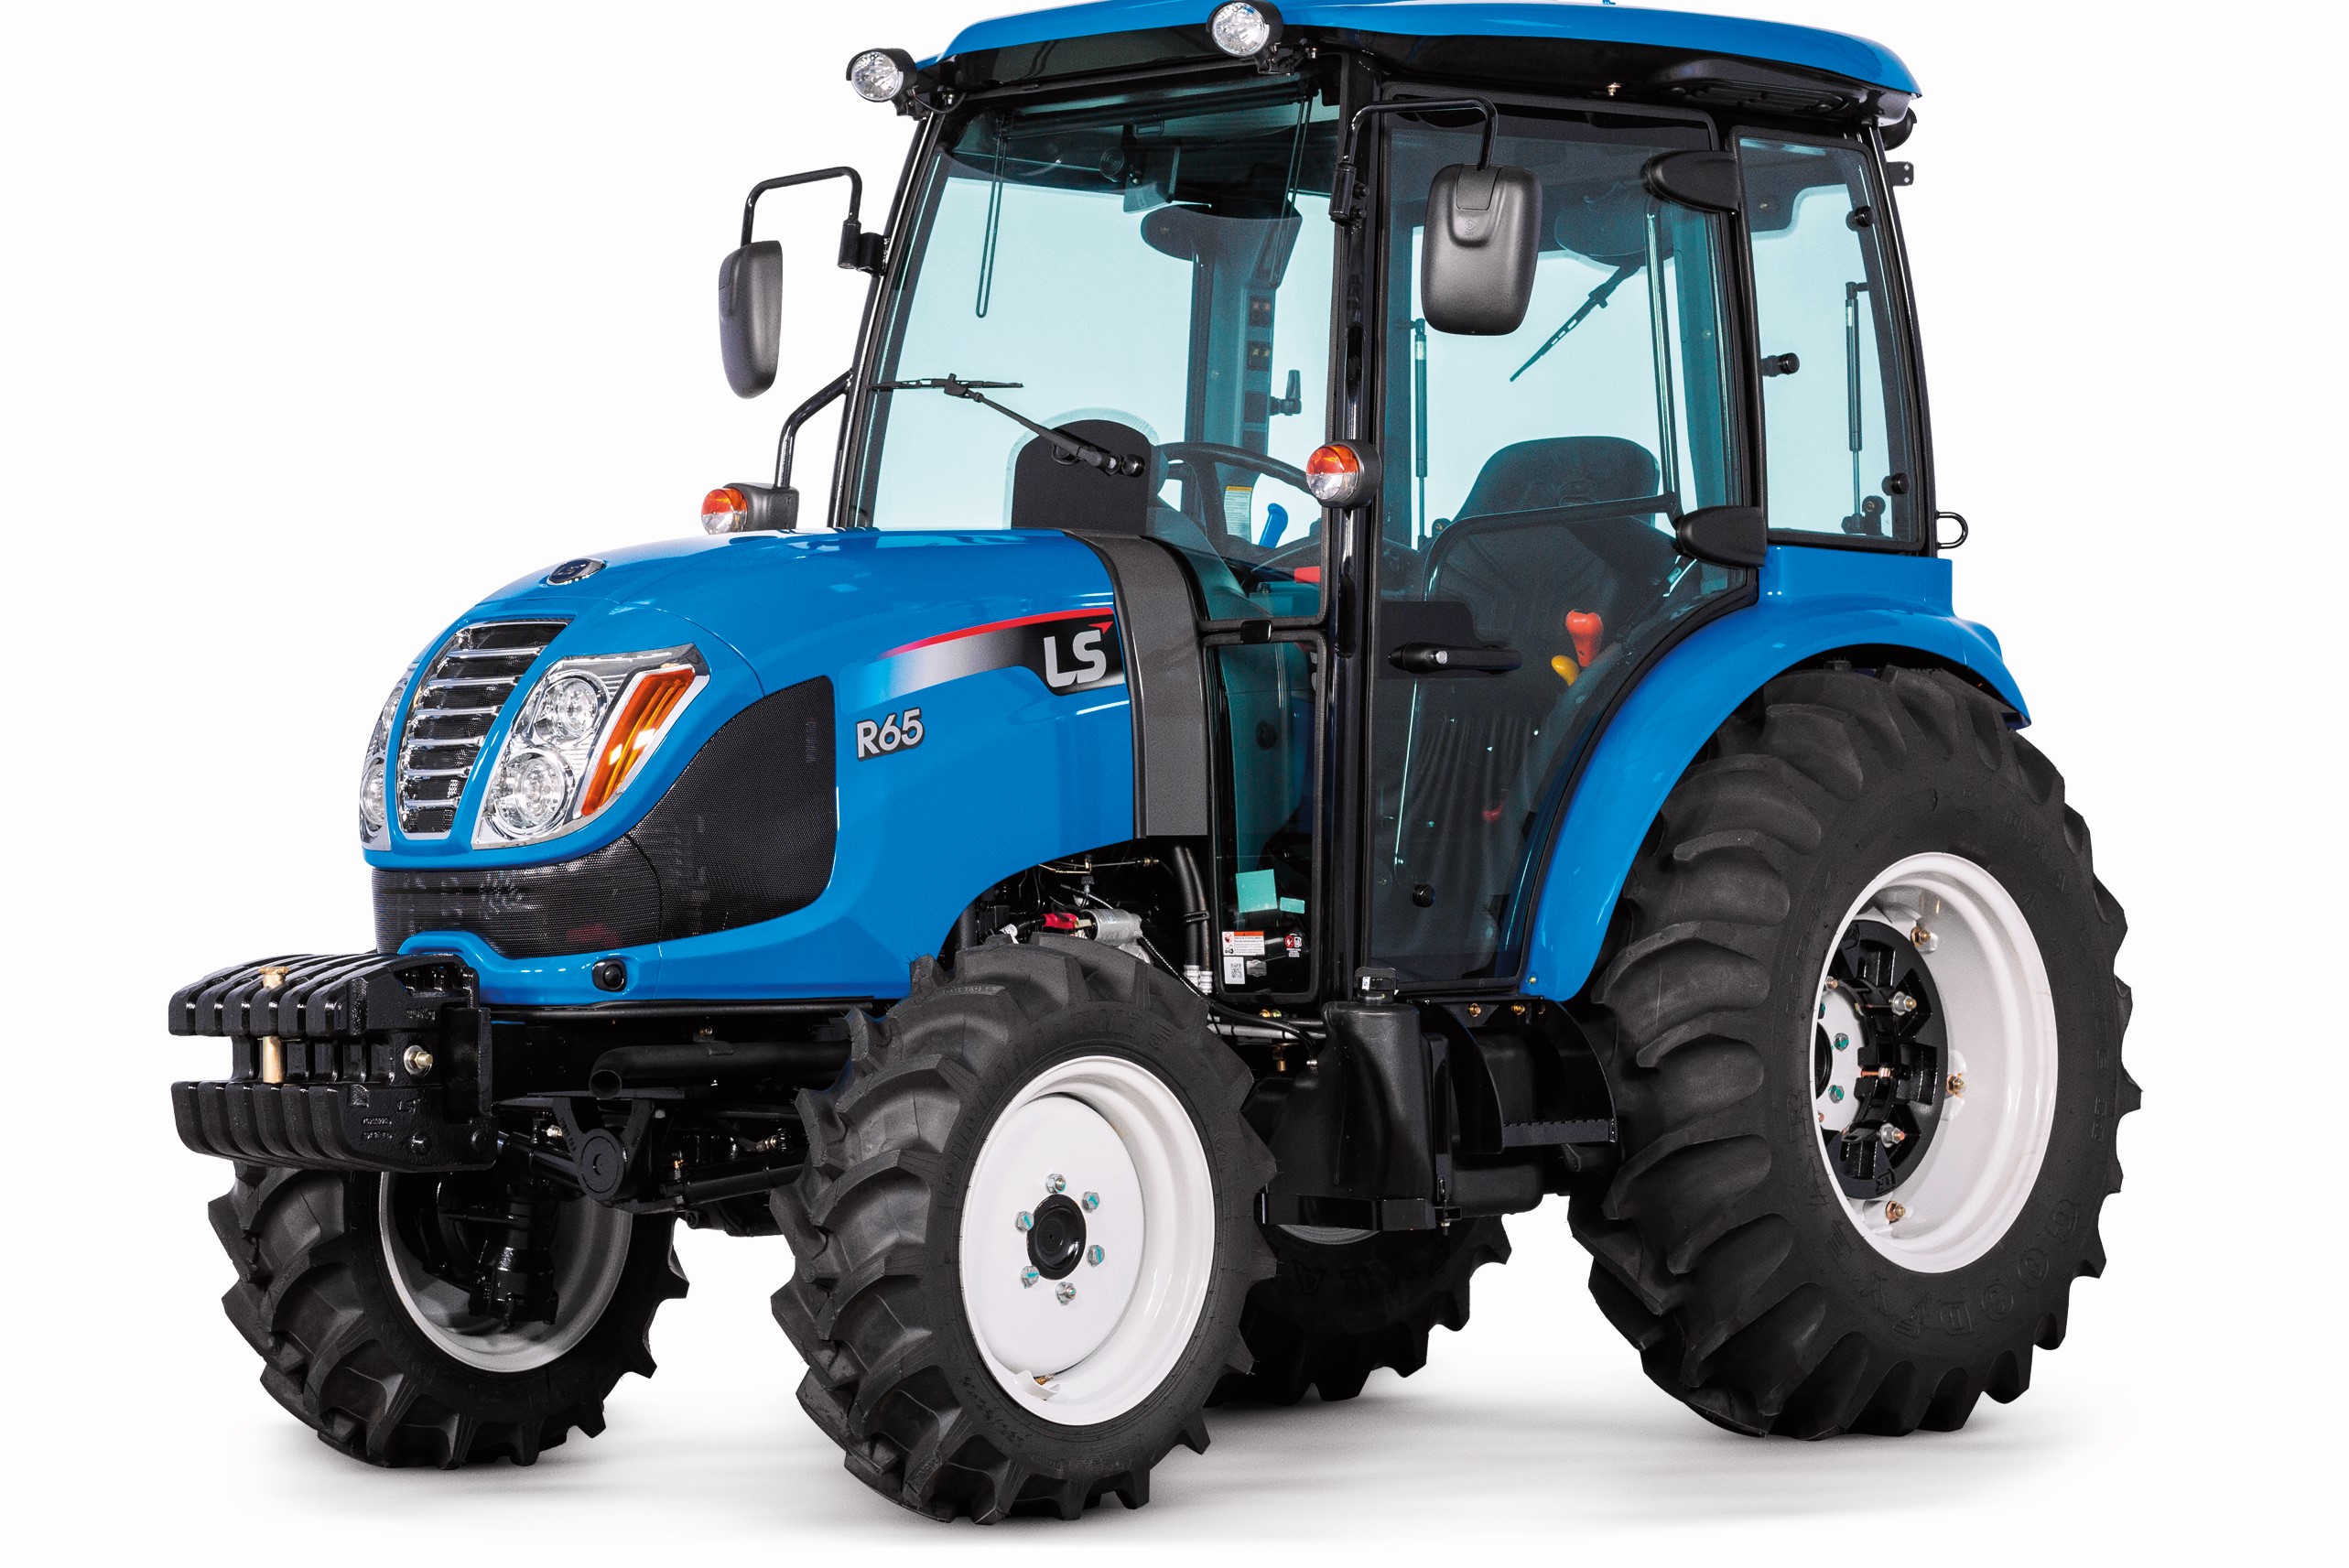 Perto de completar nove anos, LS Tractor marca presença no Show Rural Coopavel 2022